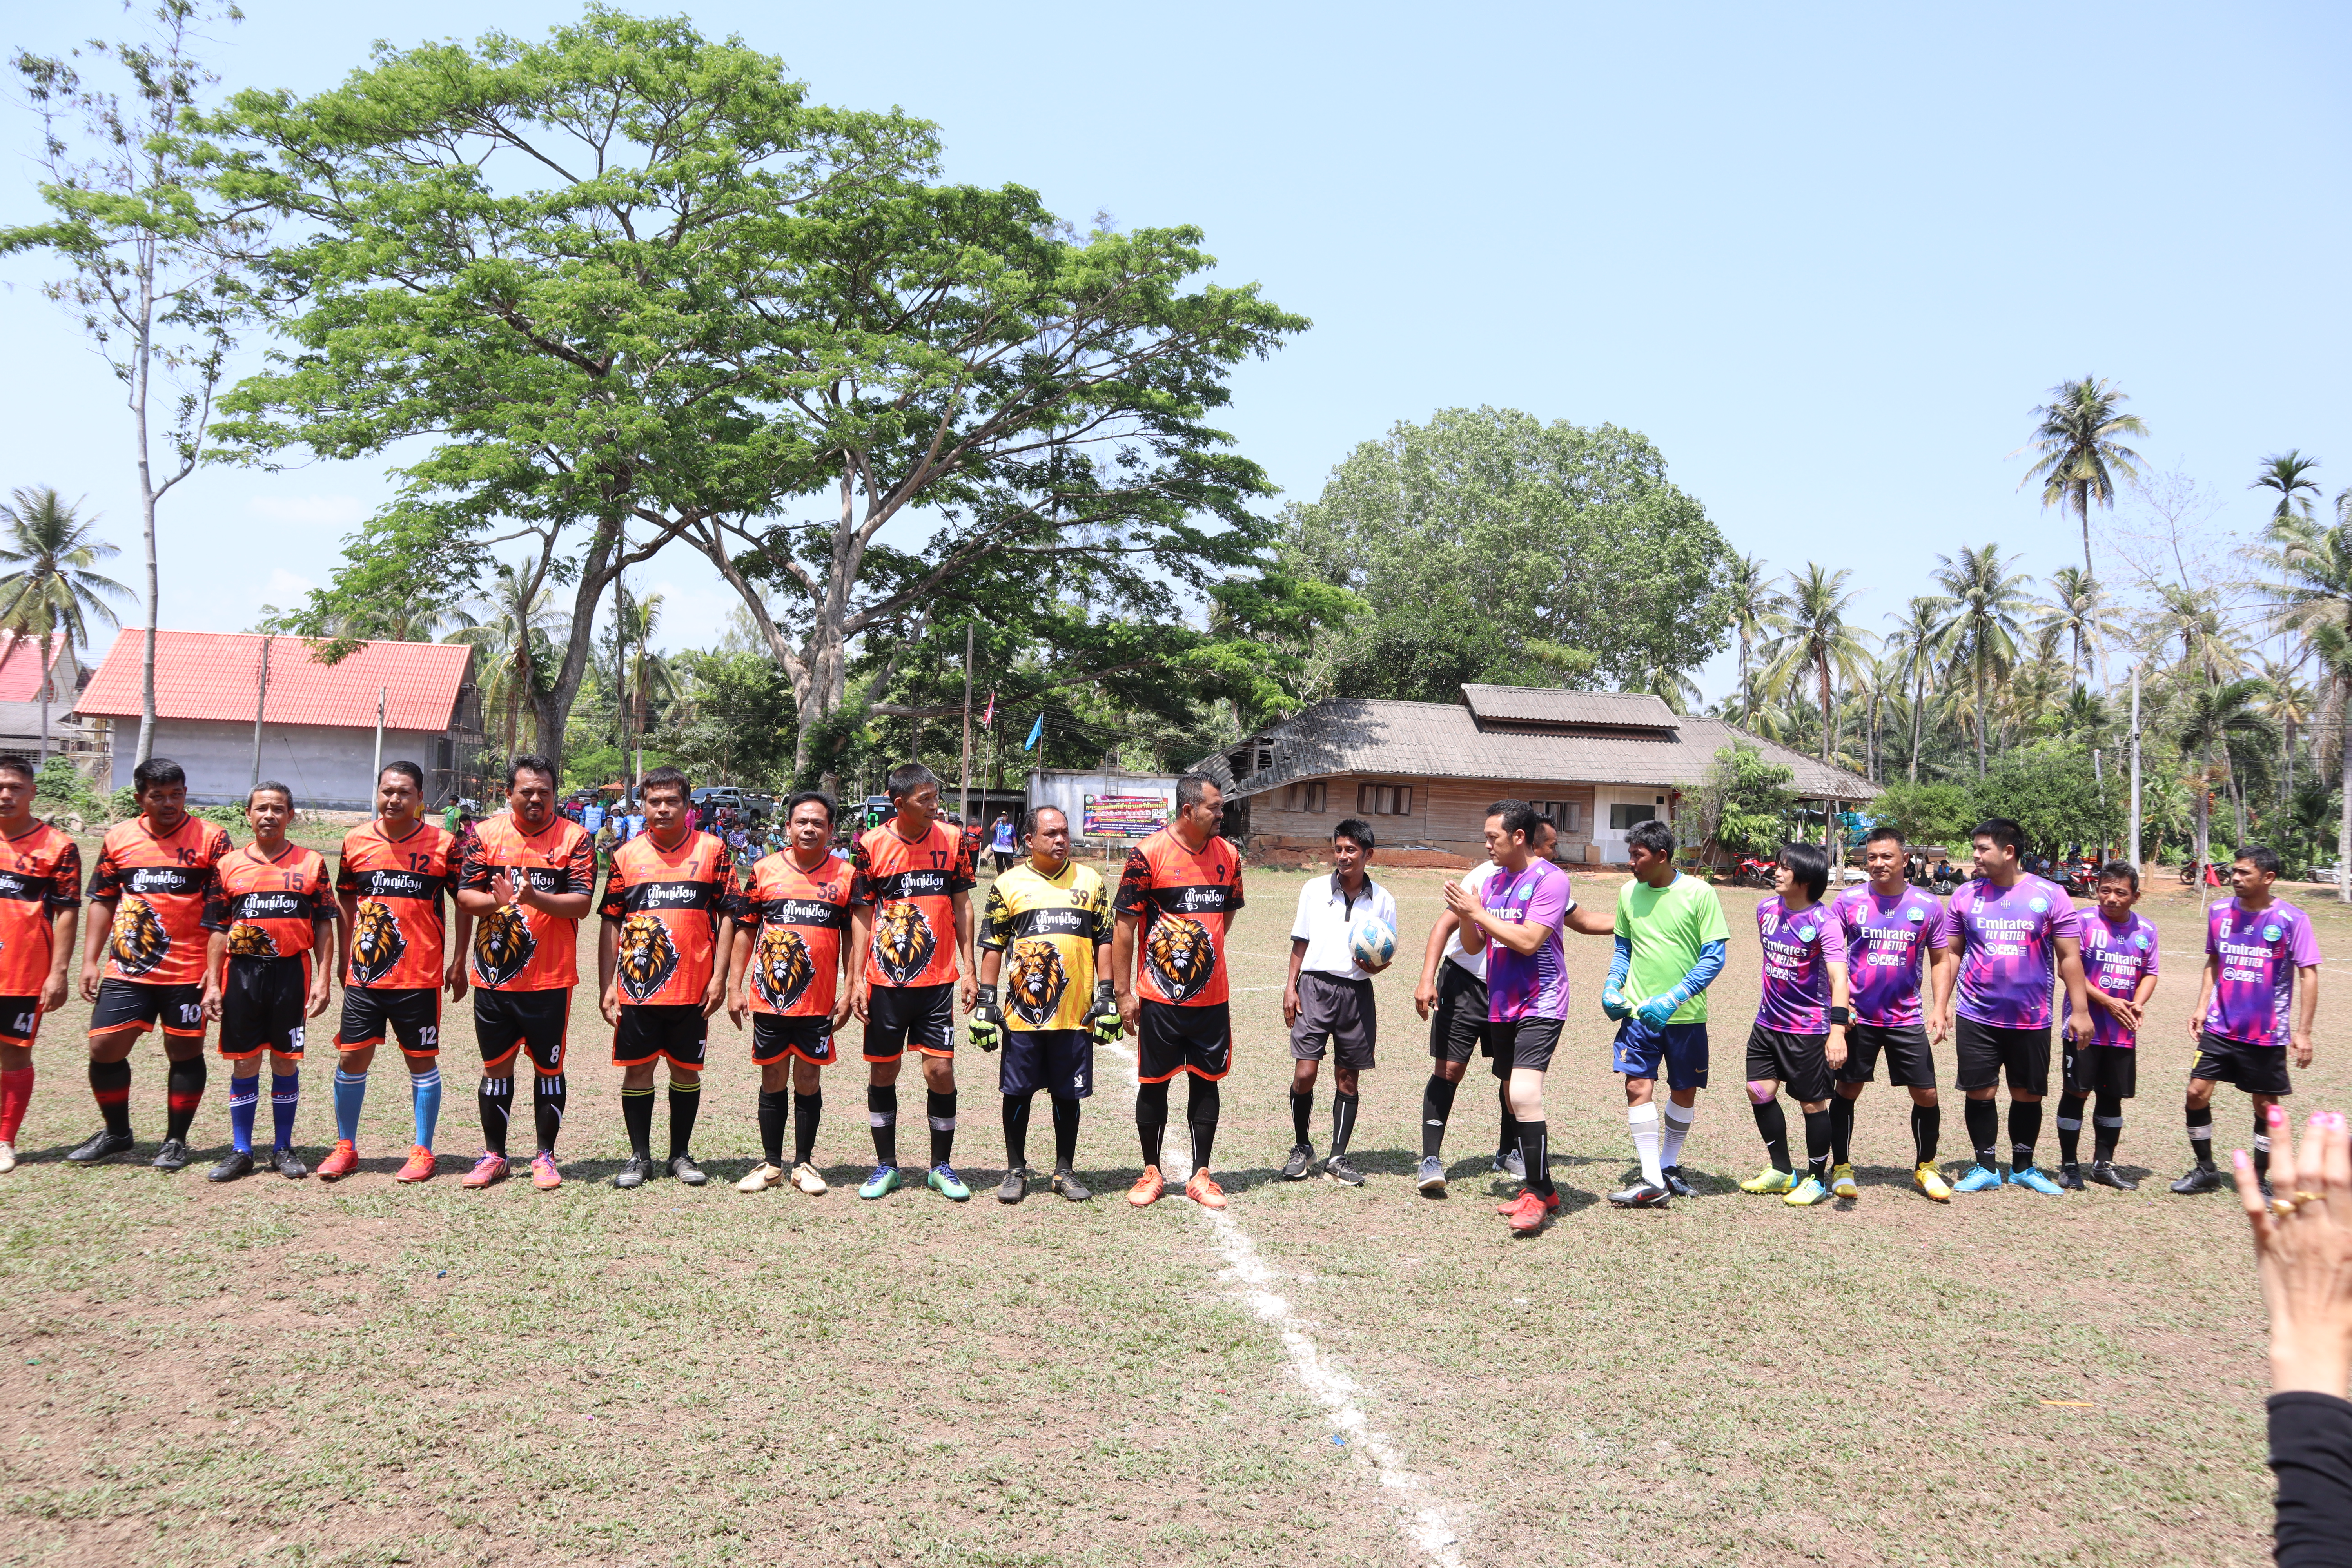 องค์การบริหารส่วนตำบลถ้ำสิงห์  ส่งนักกีฬาฟุตบอลชาย  ประเภทผู้นำ  เข้าร่วมการแข่งขันโครงการแข่งขันกีฬาตำบลวิสัยเหนือ  
การแข่งขัน  กีฬาฟุตบอล 
วันที่  22  มีนาคม  2567  ณ  สนามโรงเรียนบ้านเขาชันโต๊ะ
อบต.ถ้ำสิงห์ VS อบต.วิสัยใต้ ประเภทผู้นำ
 ผลการแข่งขัน จบเกมส์ อบต.ถ้ำสิงห์ ชนะ อบต.วิสัยใต้ 2 : 1 ประตู
ขอเชิญทุกท่านร่วมชม ร่วมเชียร์  ให้กำลังใจนักกีฬาฟุตบอลชาย  ประเภทผู้นำ  ในรอบชิงชนะเลิศ
อบต.ถ้ำสิงห์   พบกับ  อบต.ตากแดด  ณ  สนามโรงเรียนบ้านเขาชันโต๊ะ ในวันเสาร์ที่  23  มีนาคม  2567    เวลา  15.00  น.  เป็นต้นไป